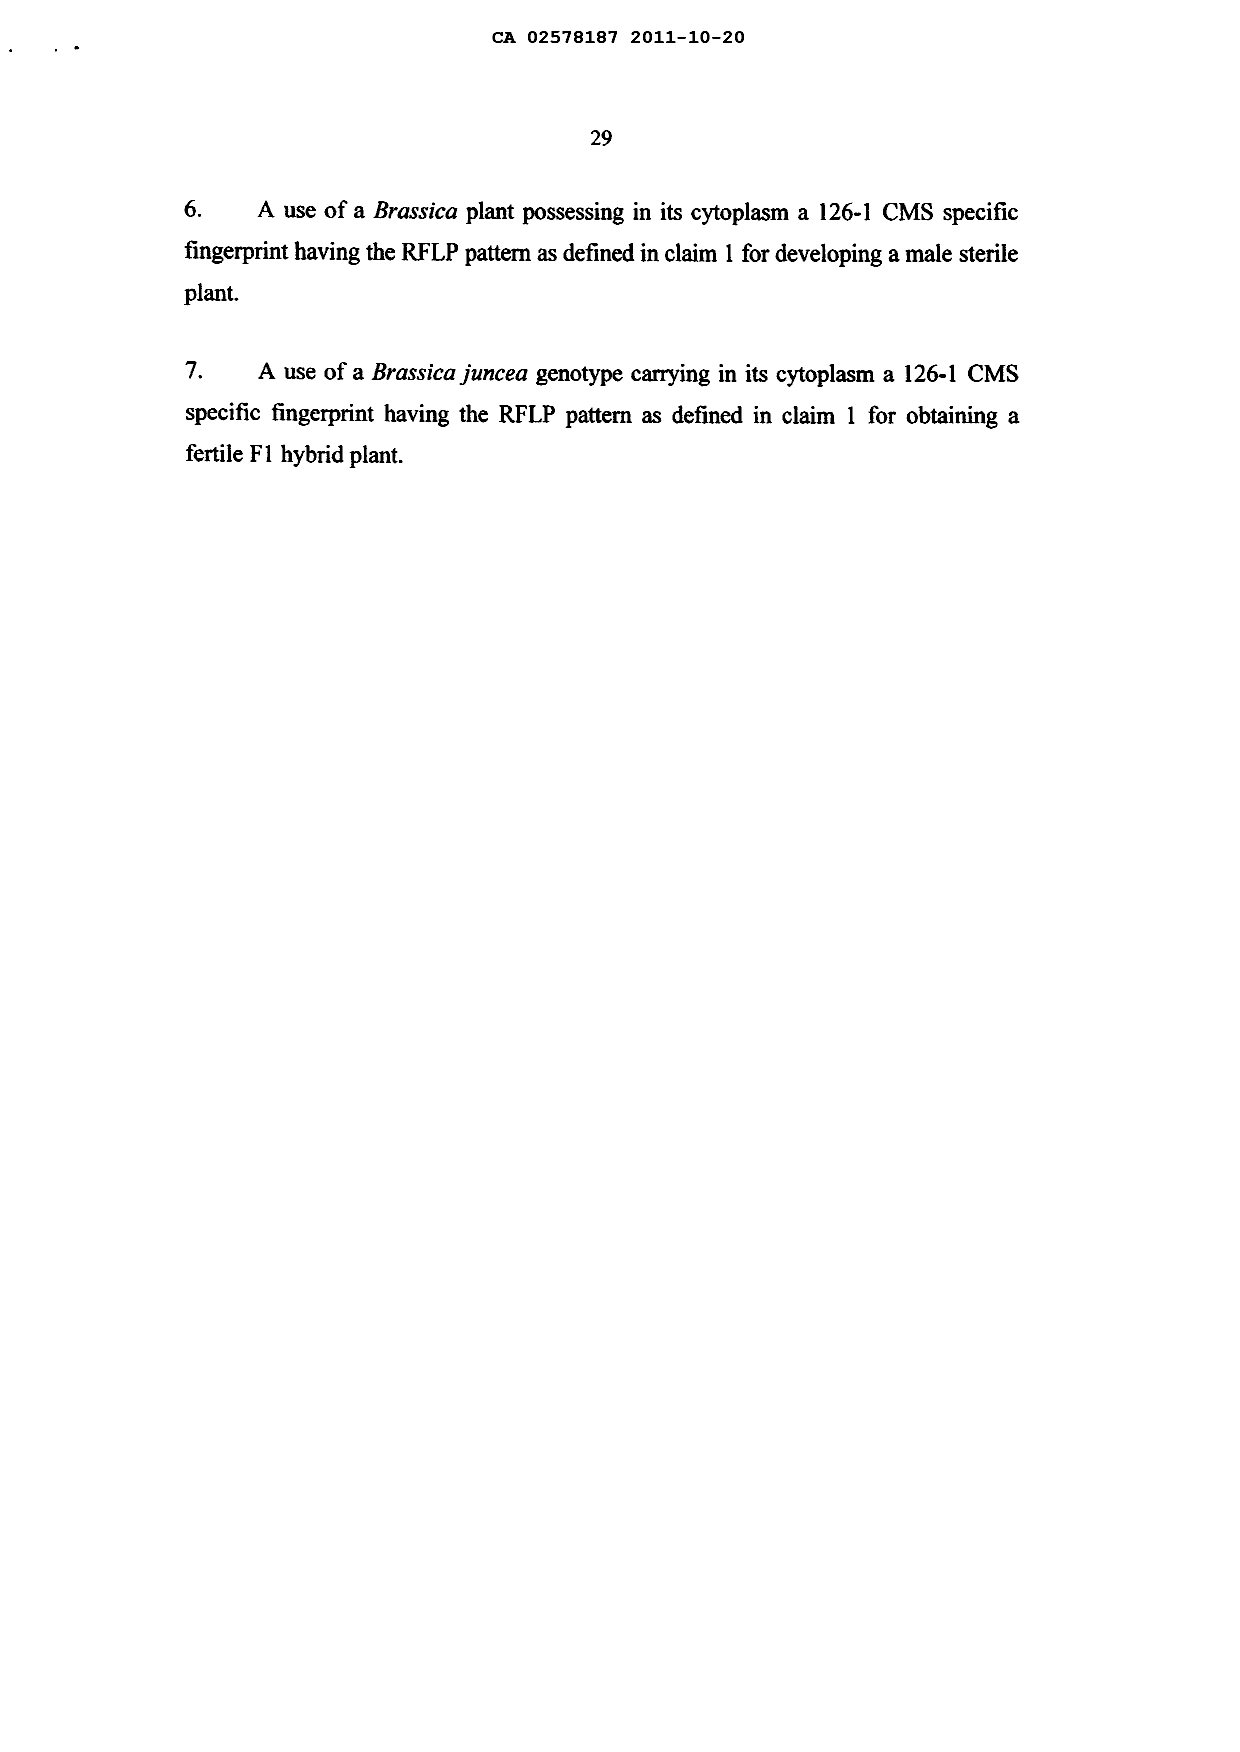 Document de brevet canadien 2578187. Revendications 20111020. Image 3 de 3